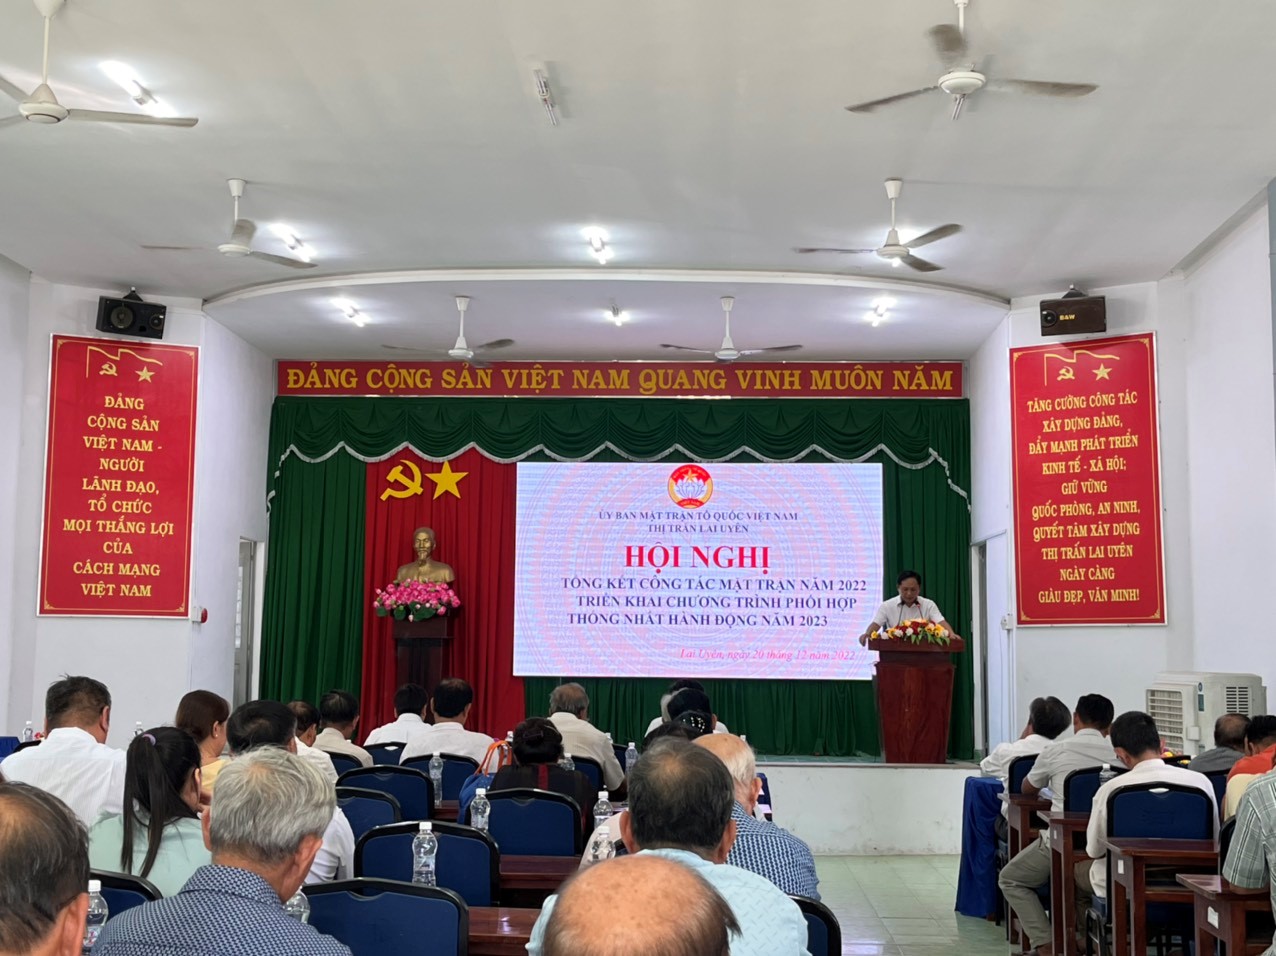 Ủy ban MTTQ Việt Nam thị trấn Lai Uyên tổ chức Hội nghị tổng kết công tác mặt trận năm 2022